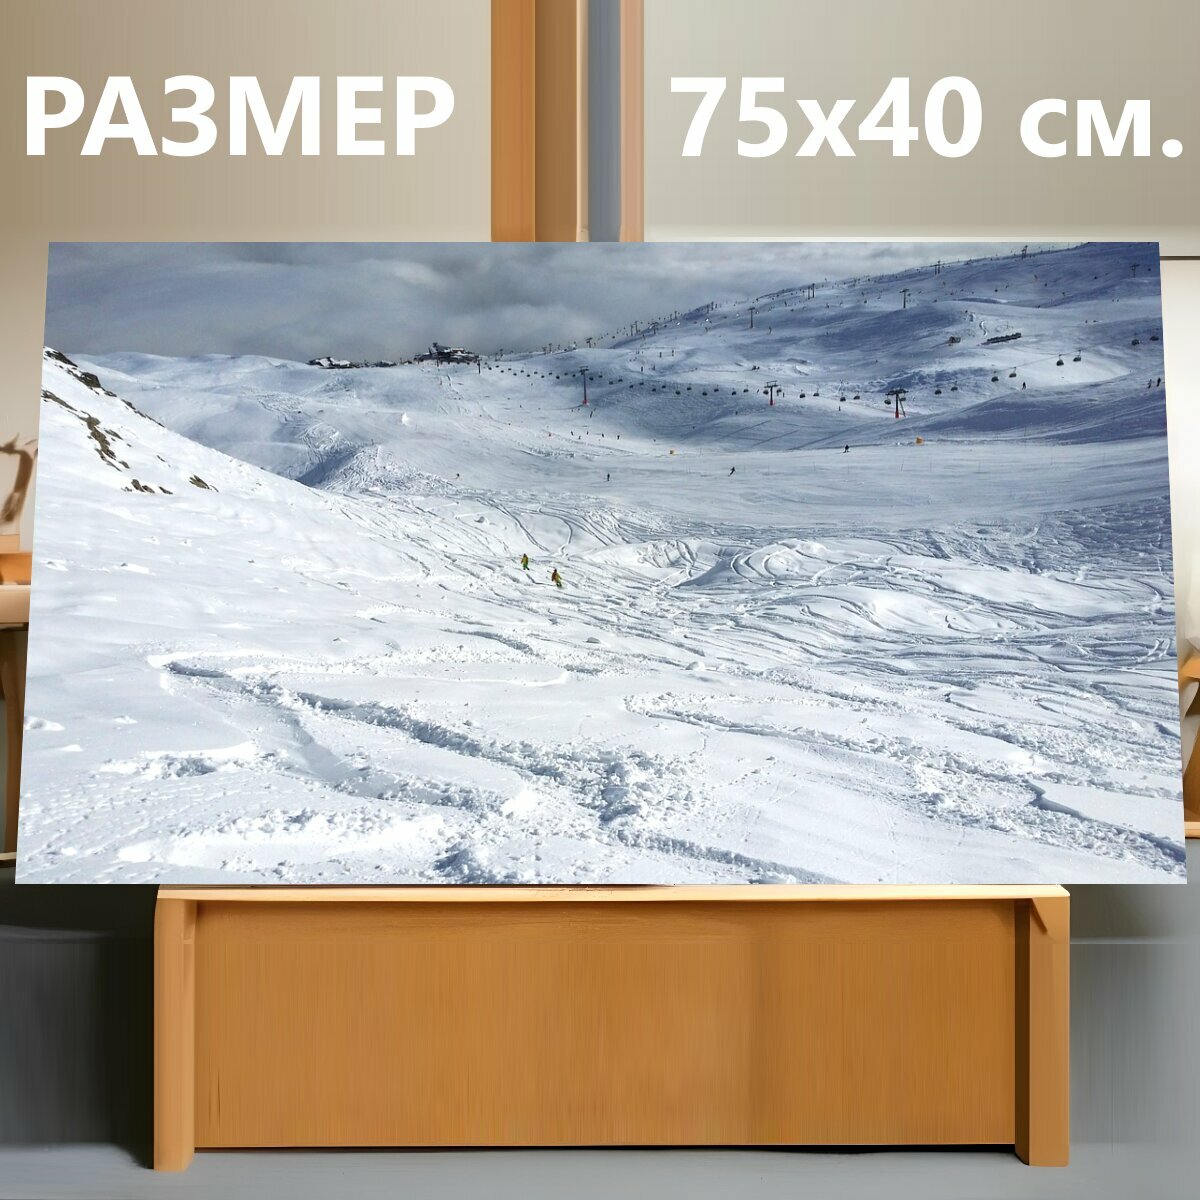 Картина на холсте "Кататься на лыжах, зимние виды спорта, снег" на подрамнике 75х40 см. для интерьера